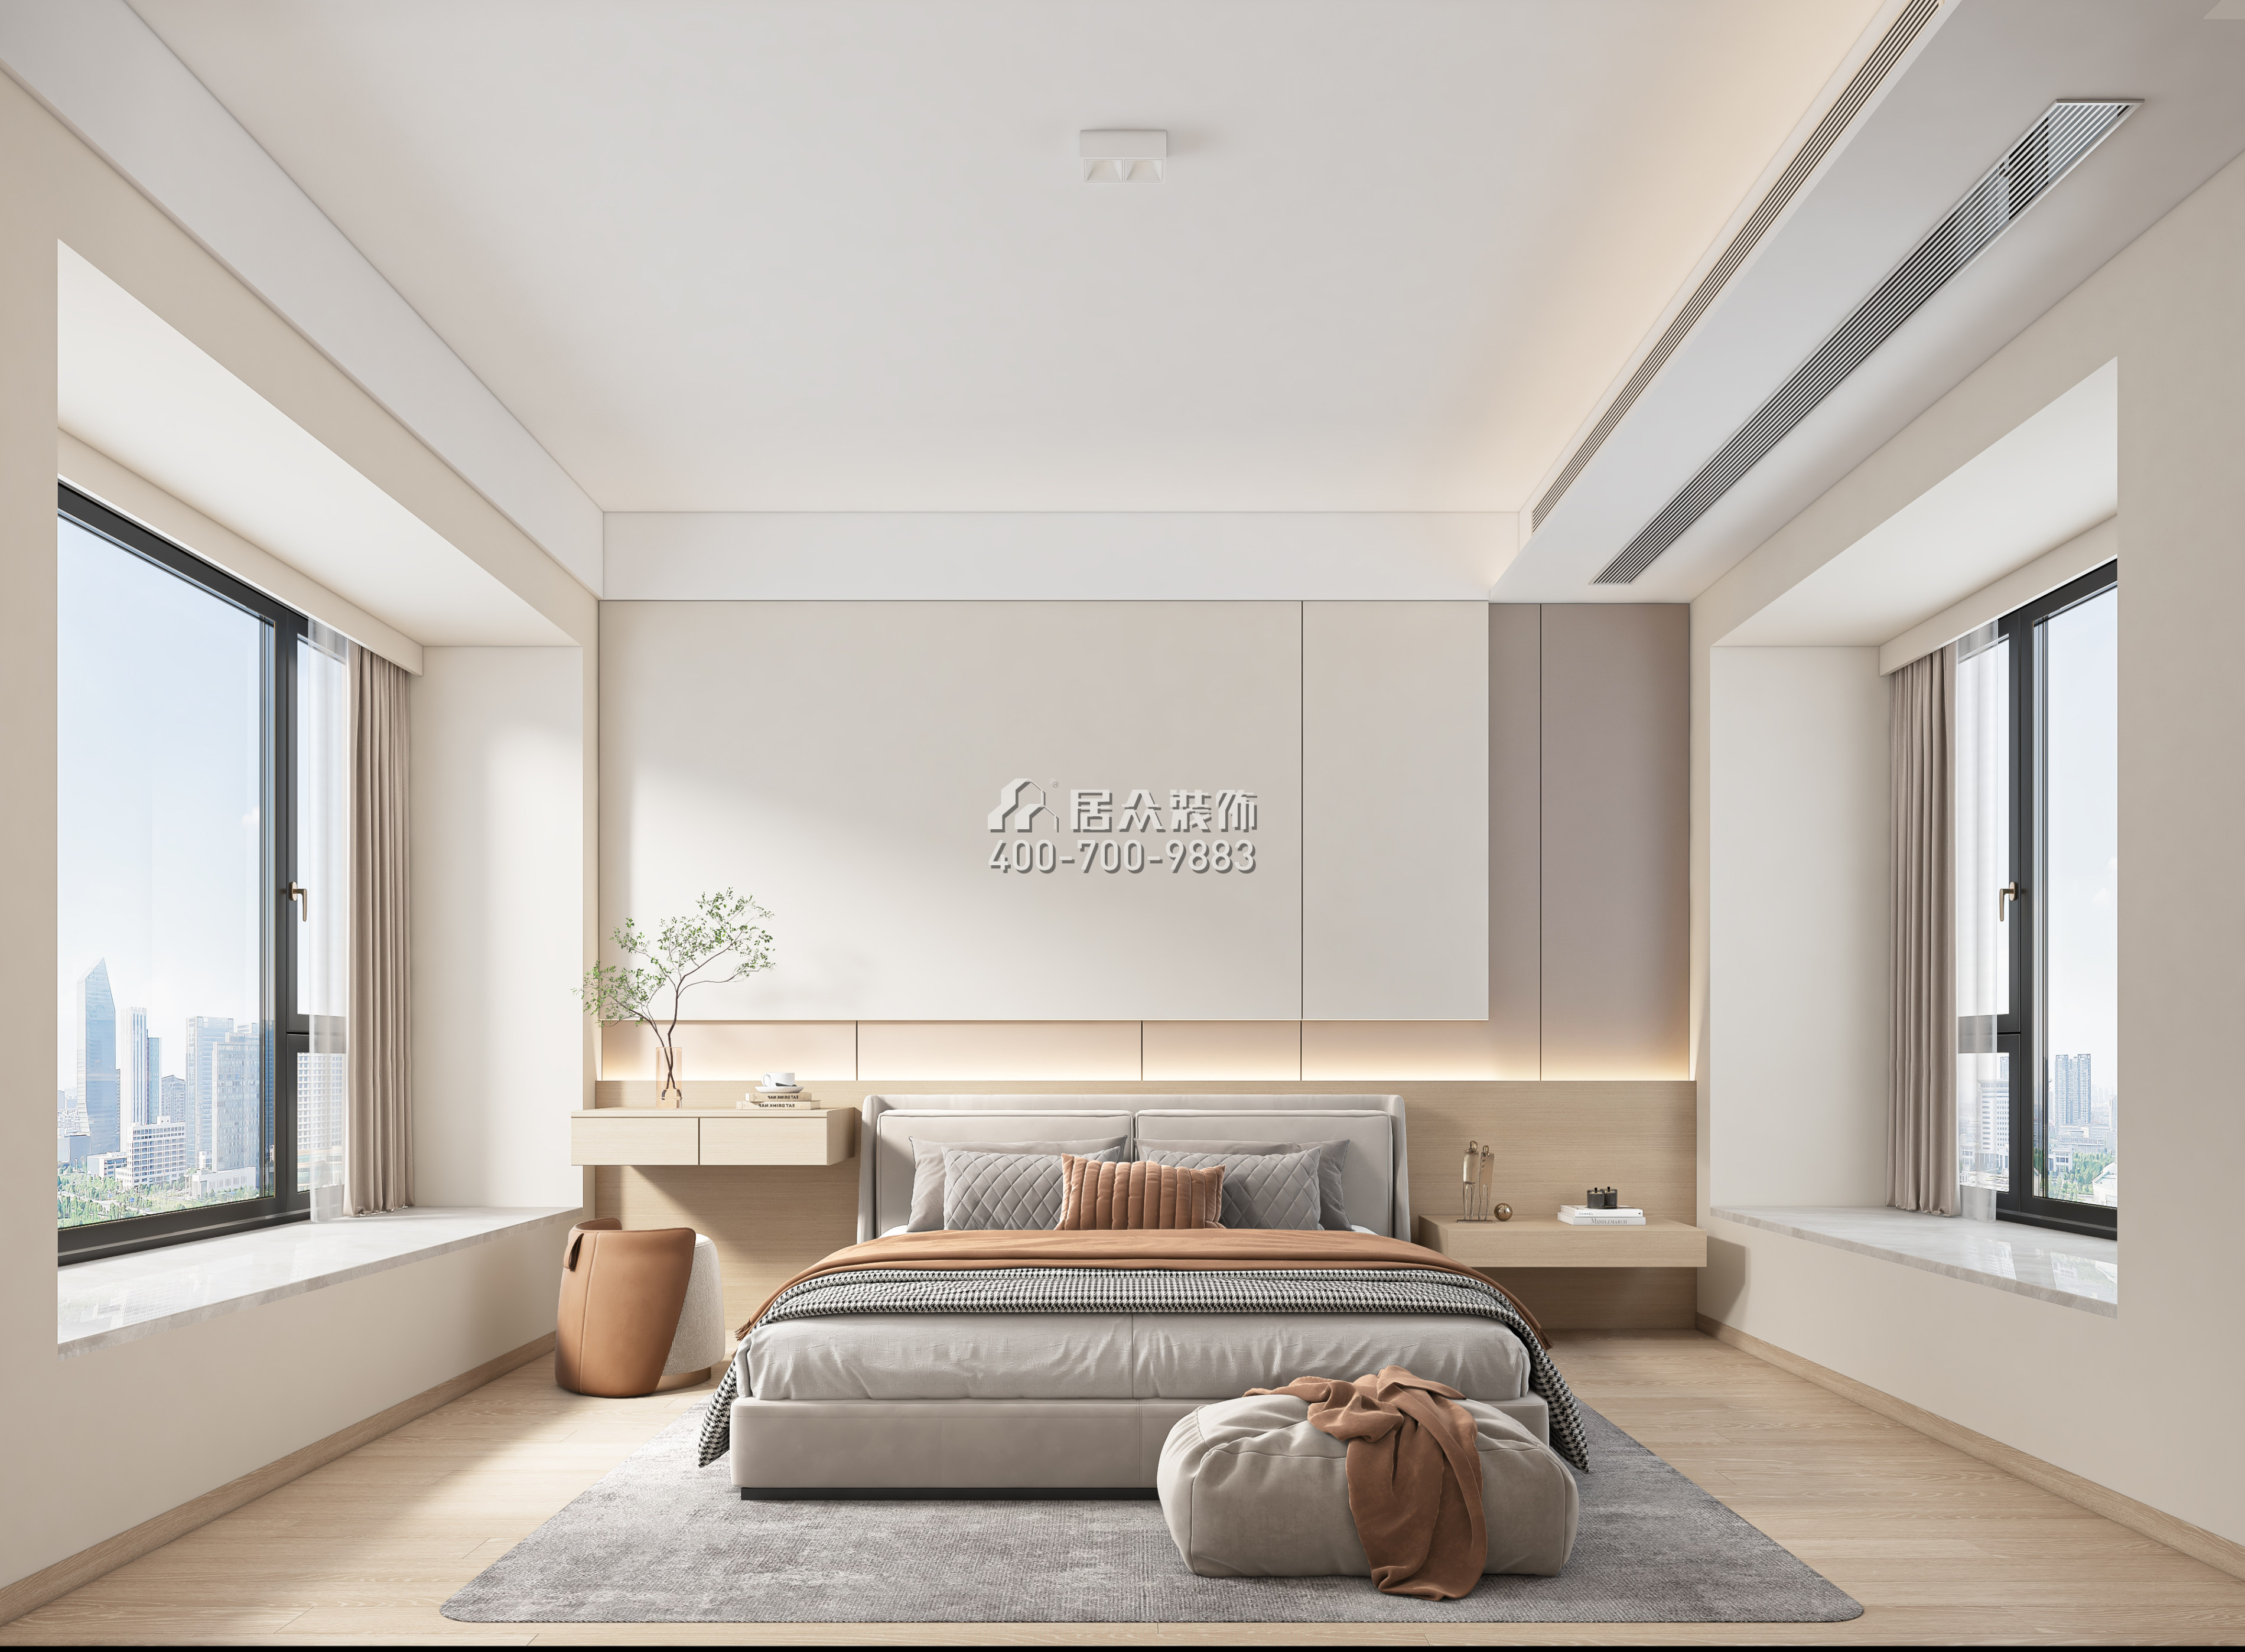 天鹅湖花园三期122平方米现代简约风格平层户型卧室装修效果图